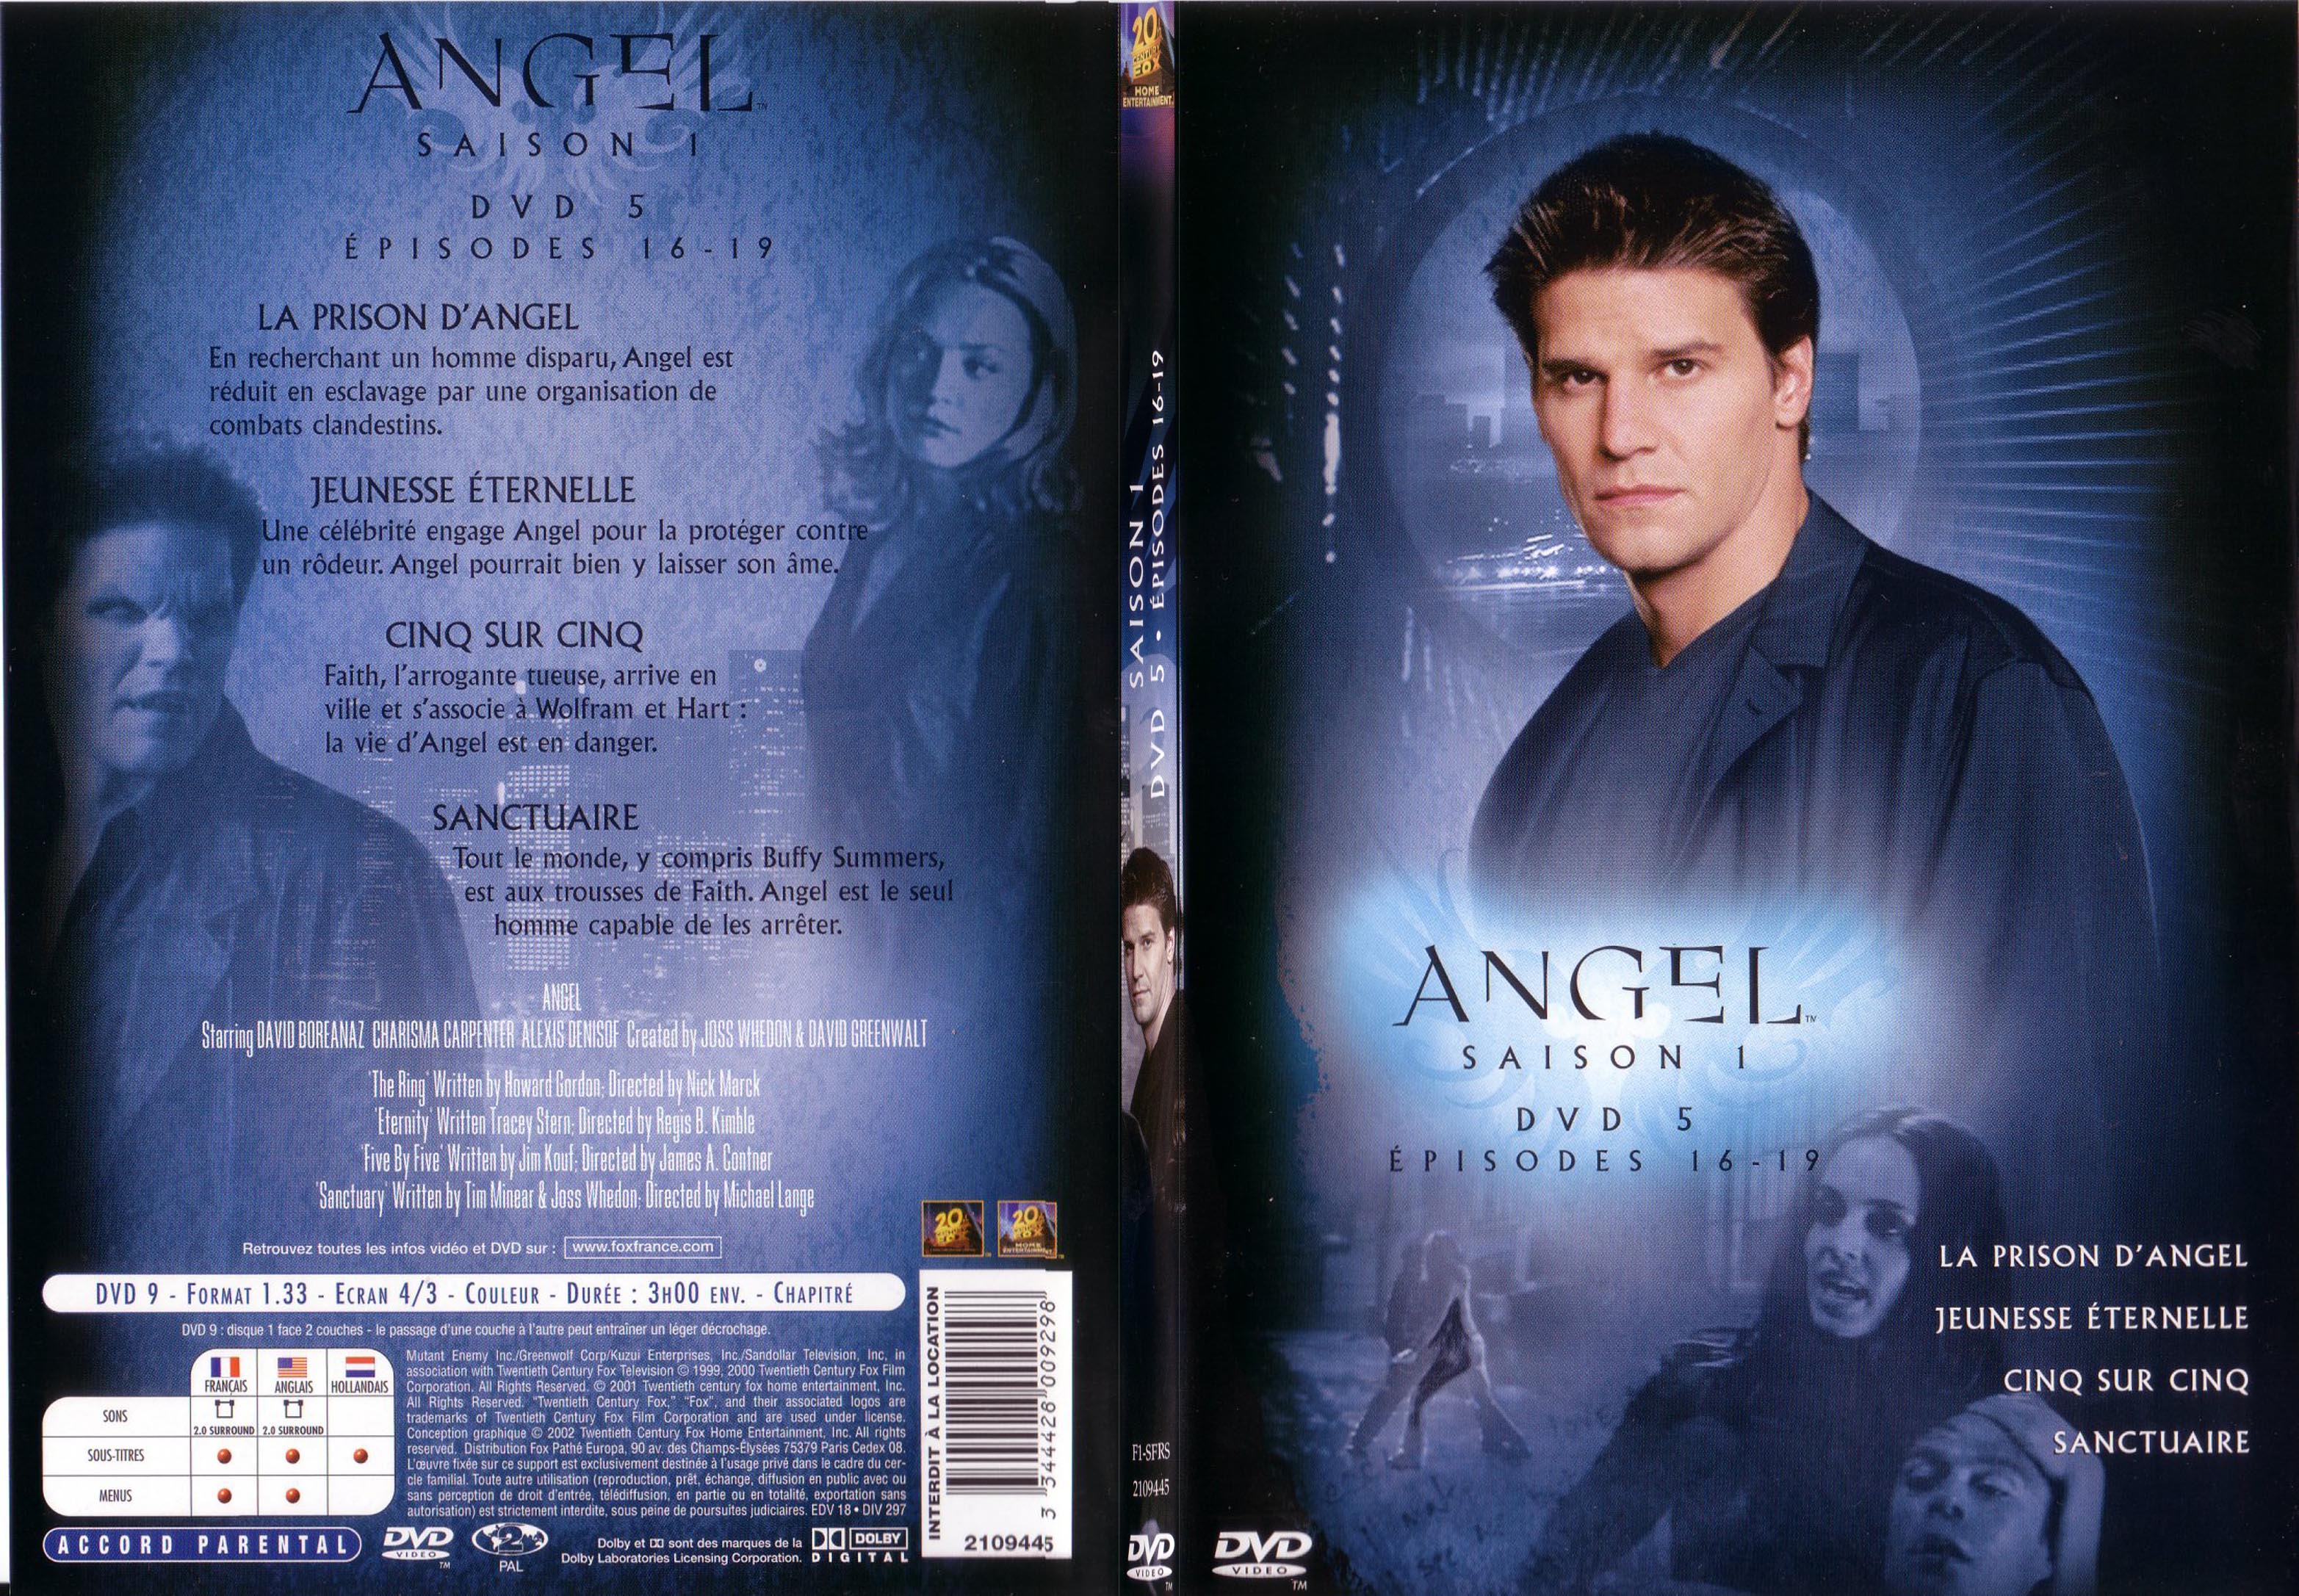 Jaquette DVD Angel Saison 1 Vol 5 - SLIM